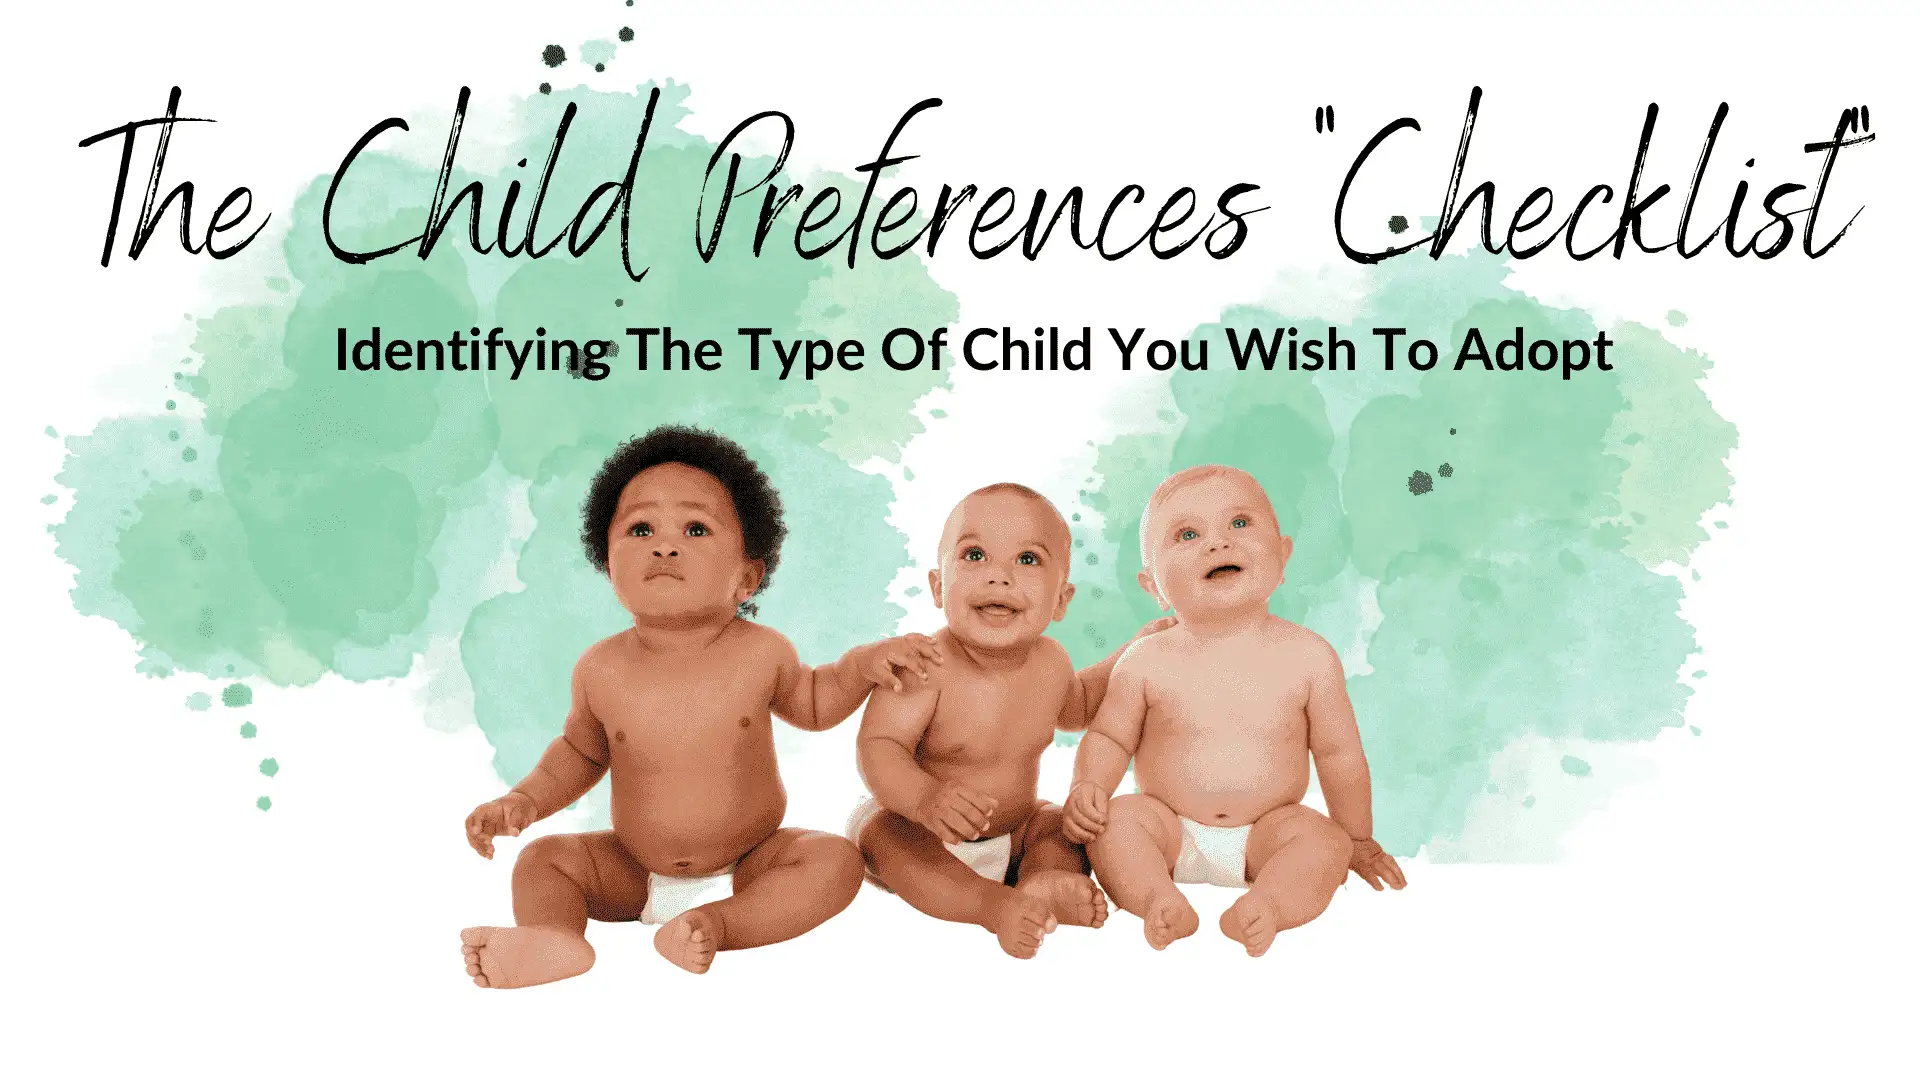 The Child Preferences Checklist